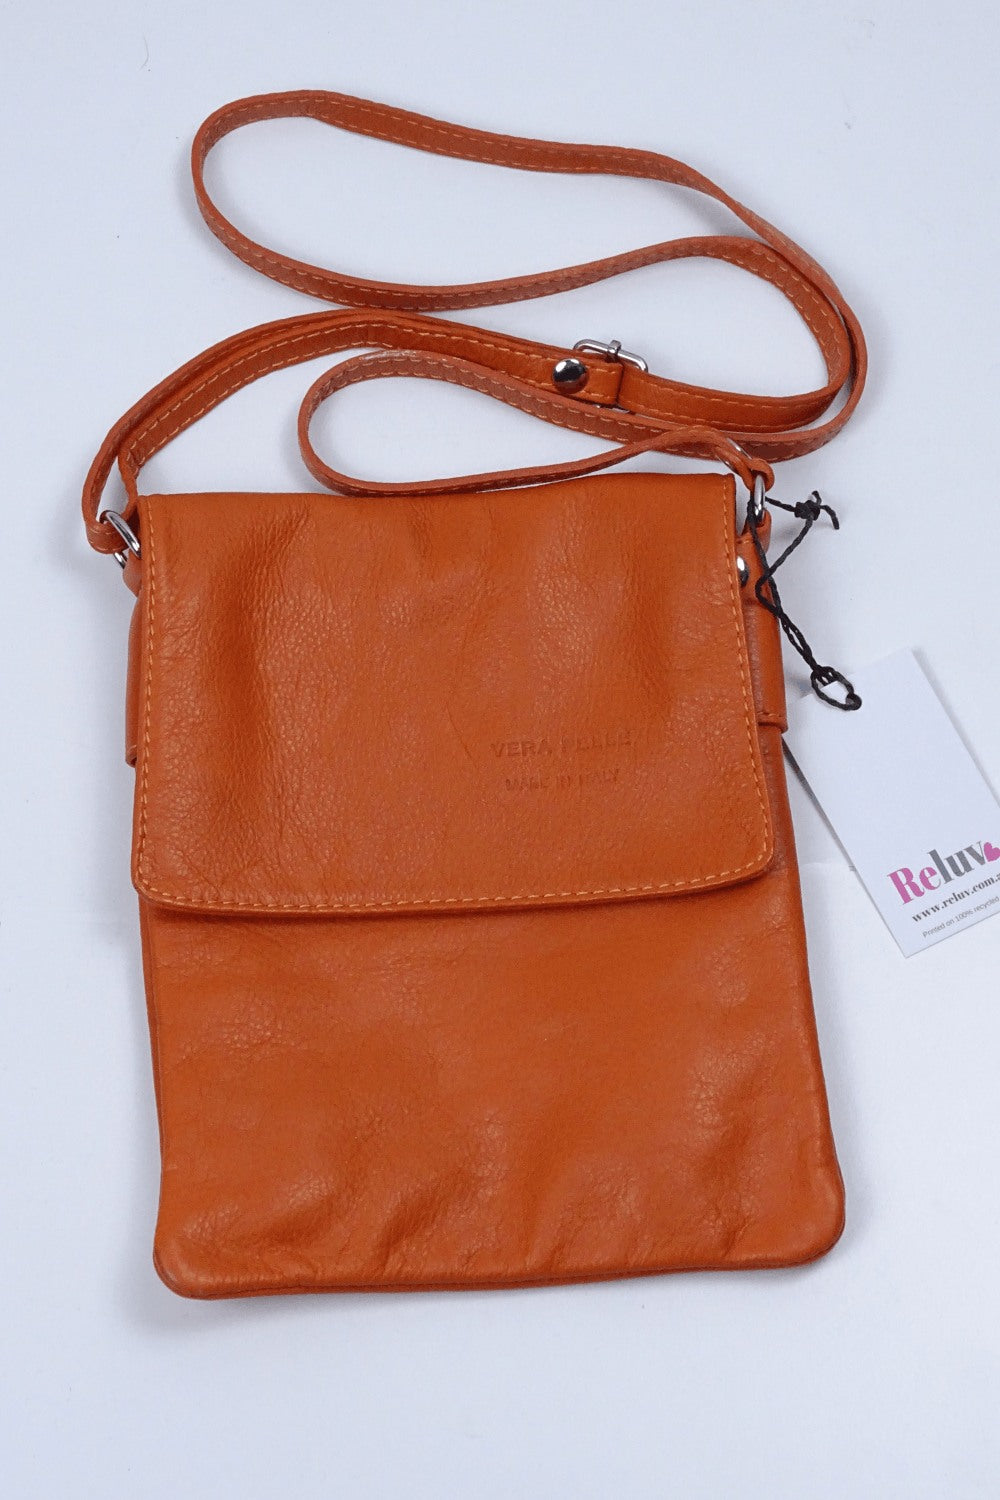 Vera Pelle Orange Bag